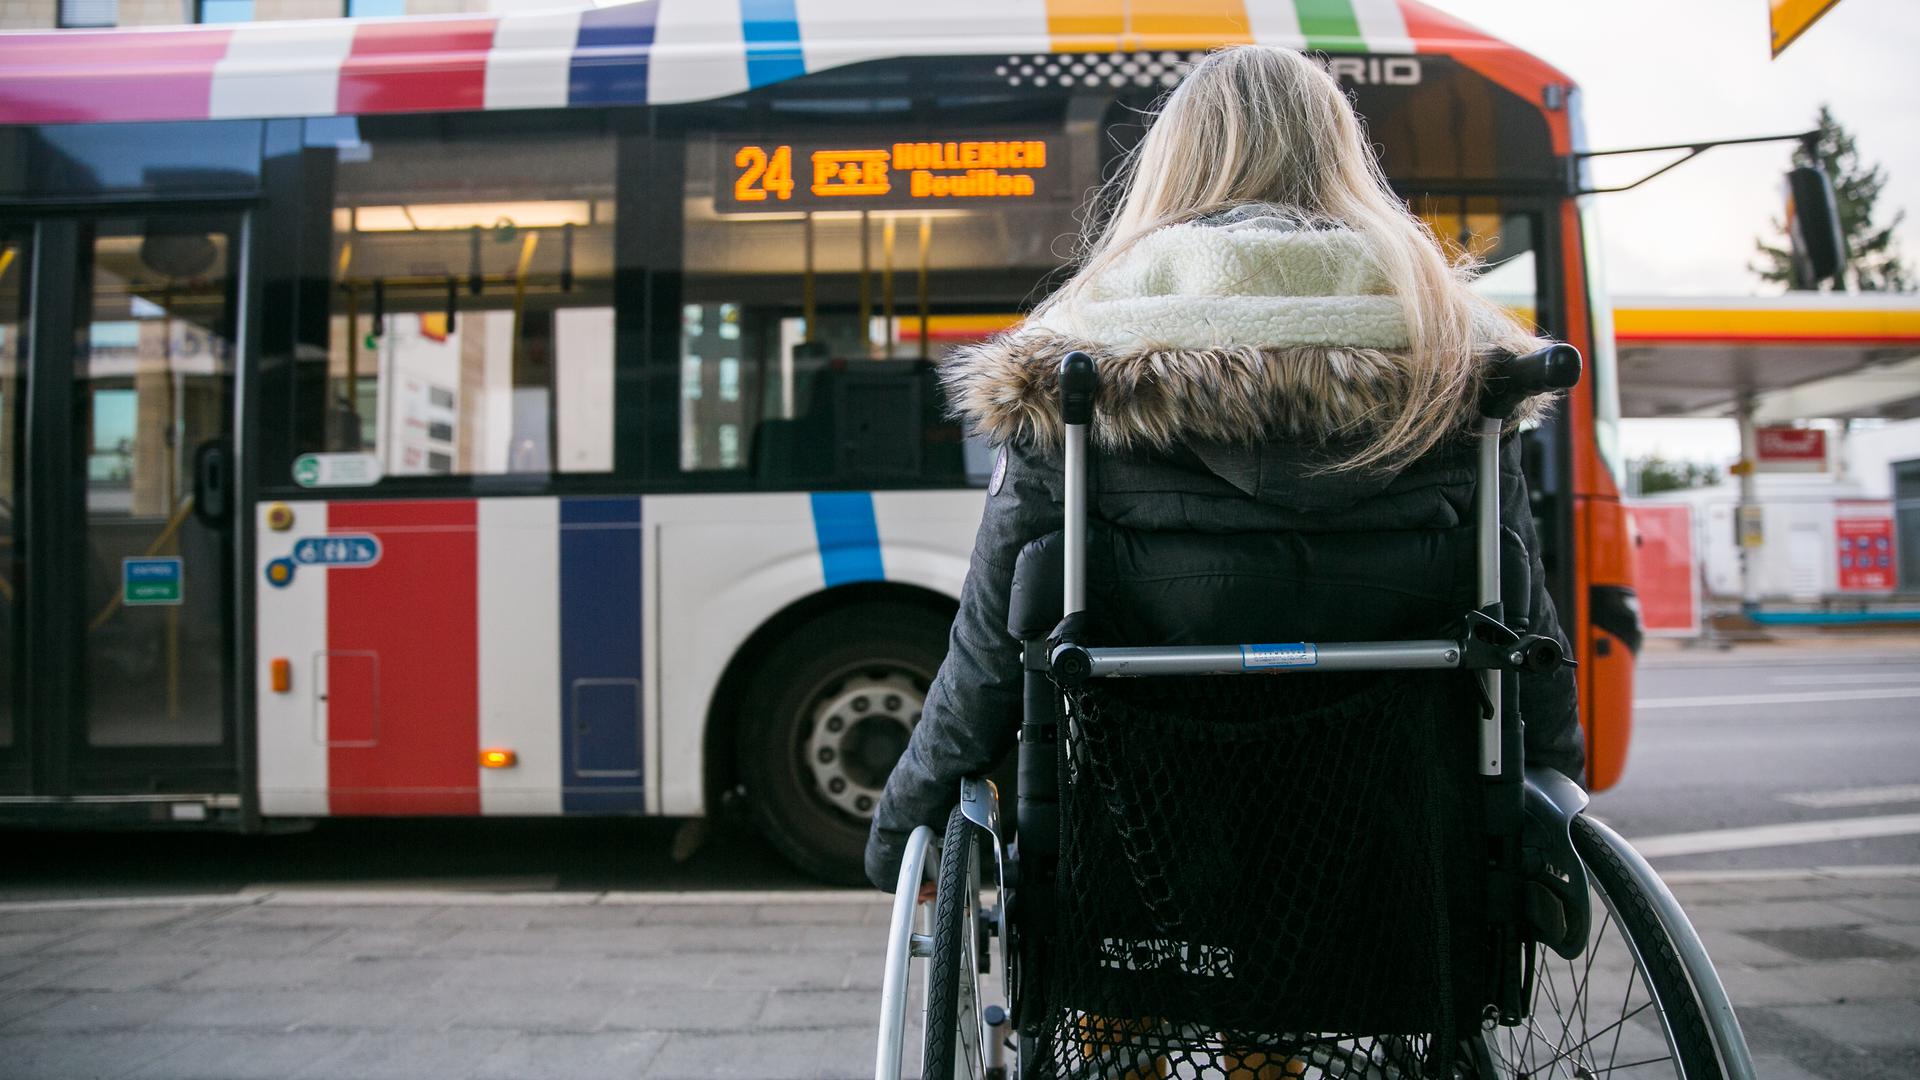 Après les transports publics, c'est au tour des bâtiments publics et privés de s'adapter aux personnes handicapées